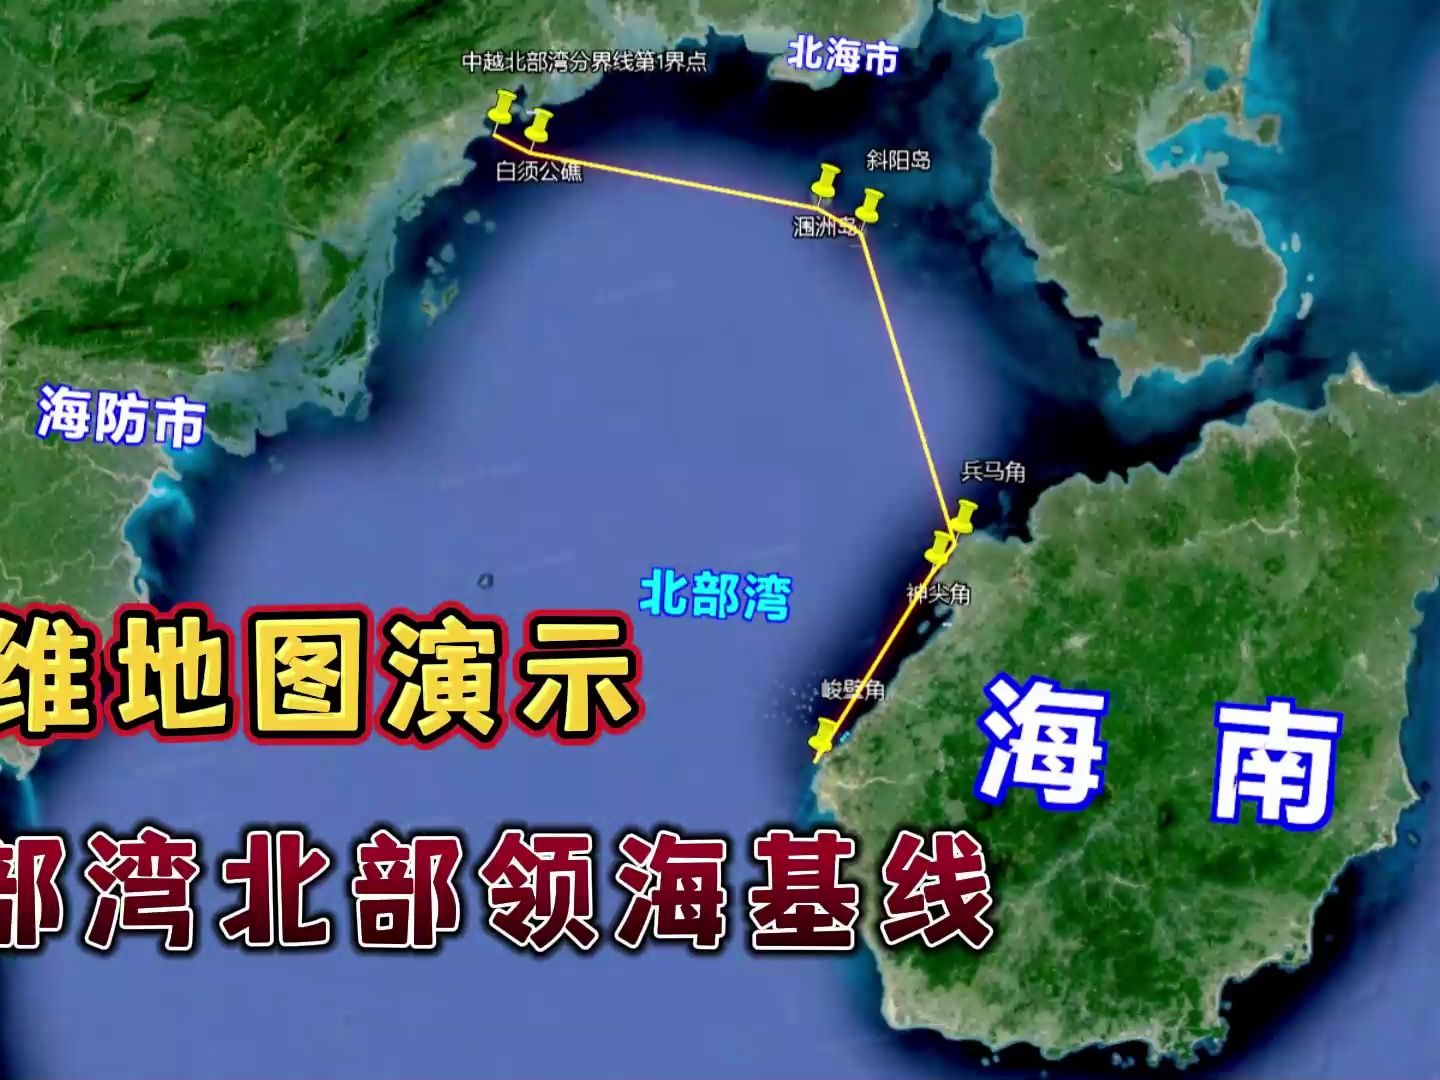 三维地图演示:中国北部湾北部领海基线